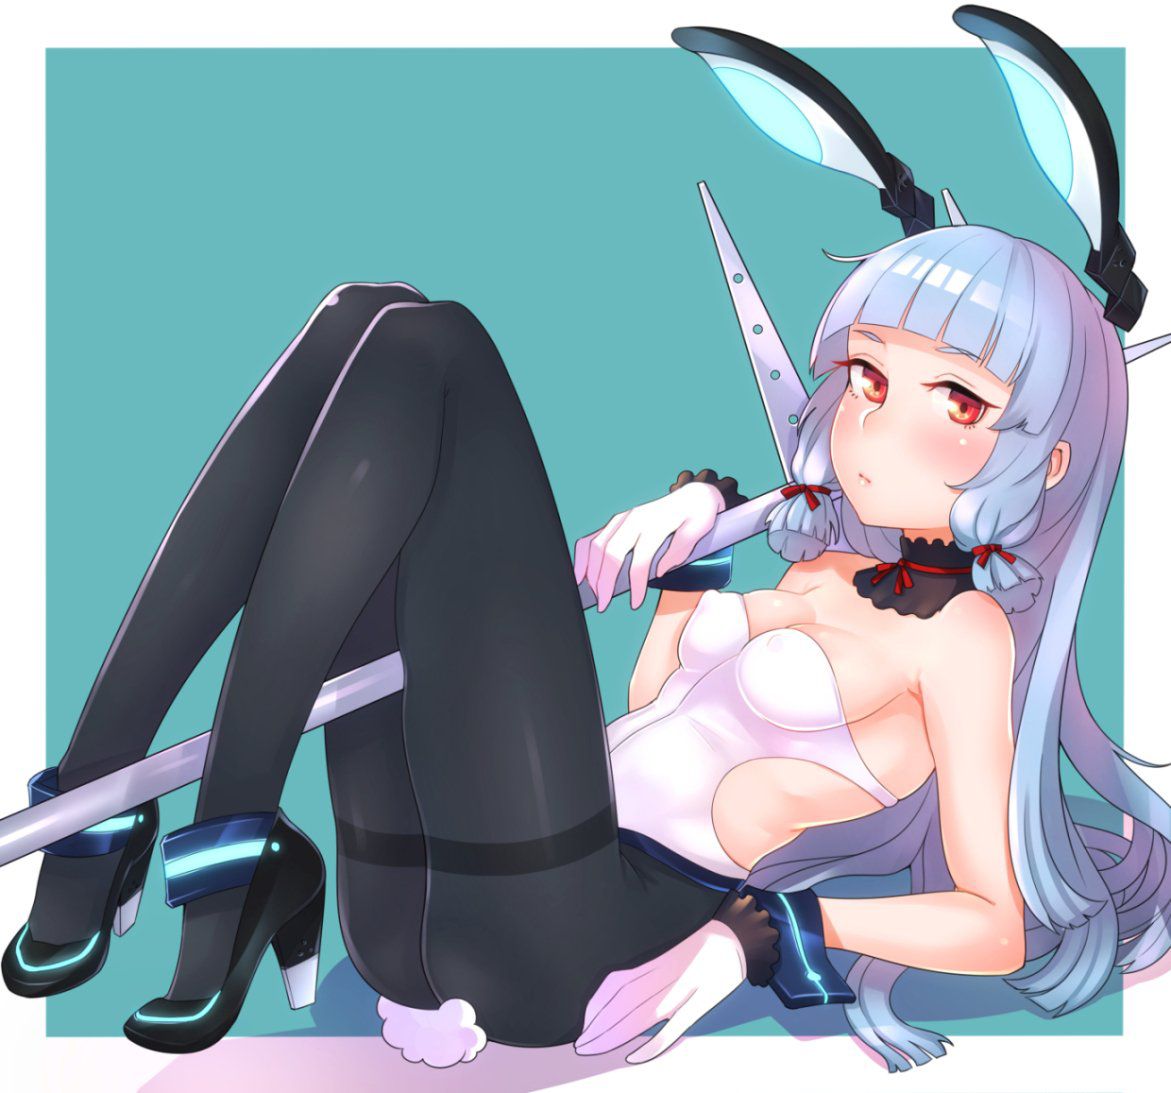 [2次] girl second erotic pictures of Sexy Bunny girl outfit 4 Bunny 19